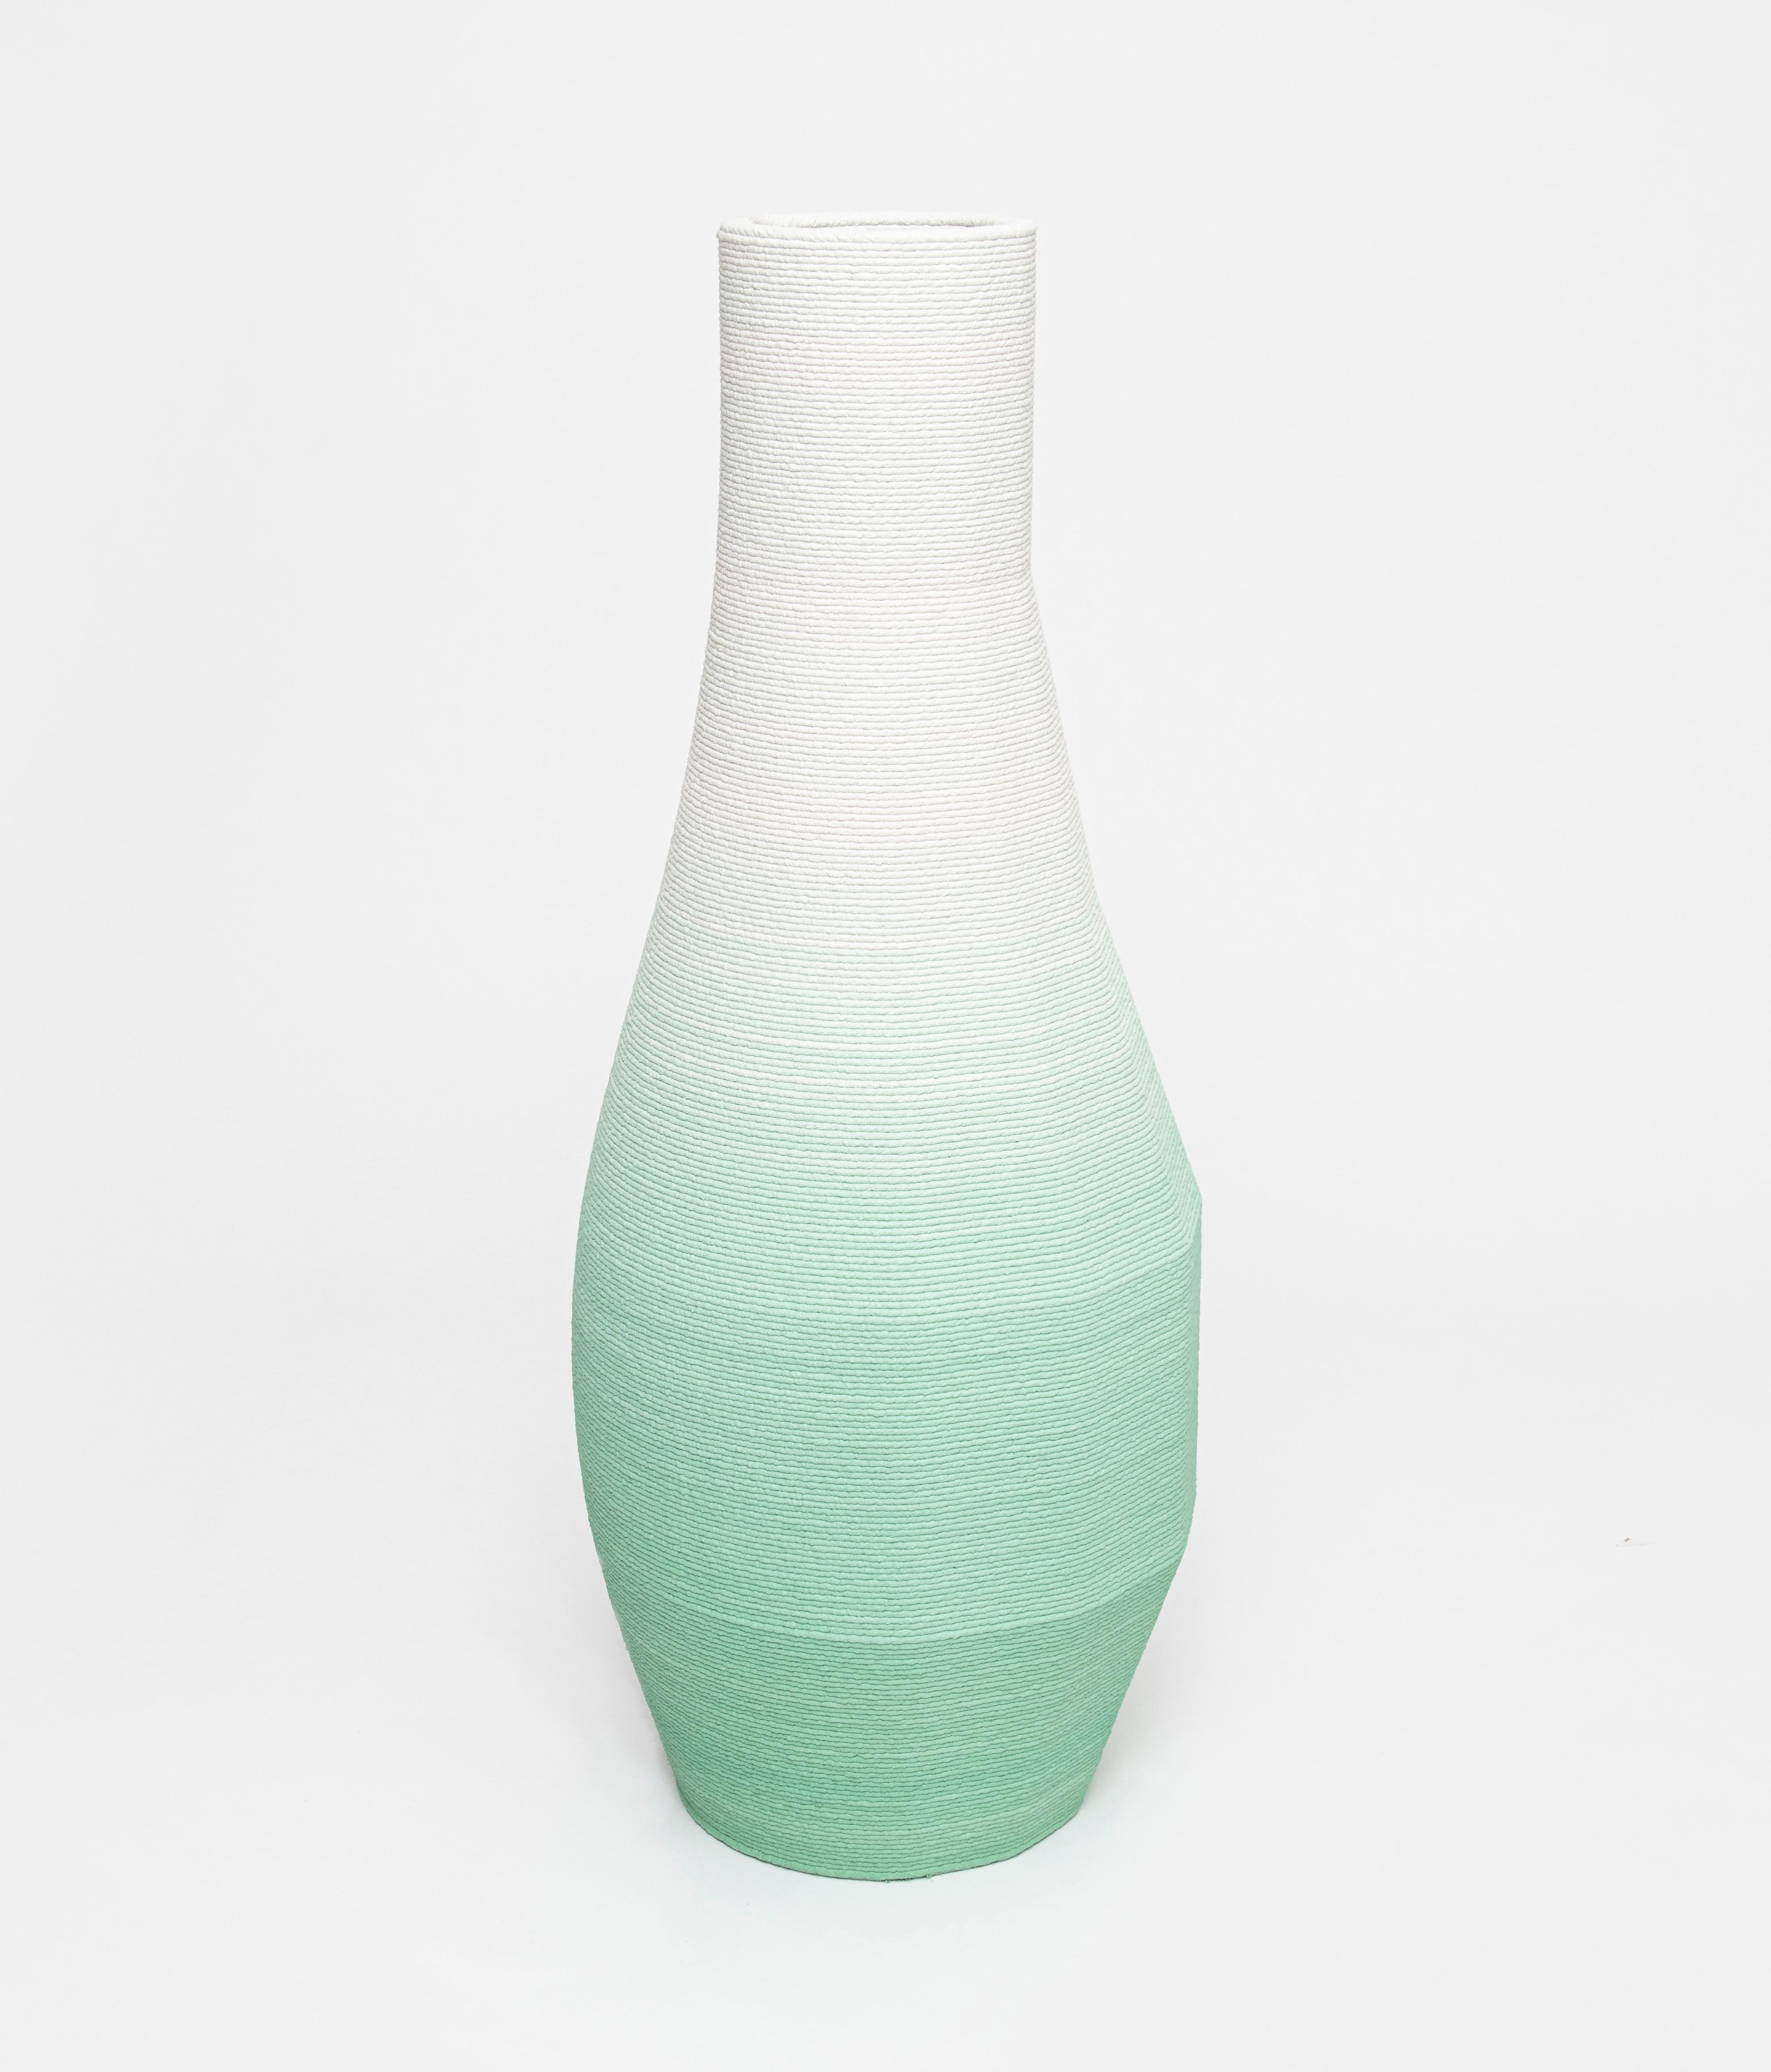 Modern Large Concrete Gradient Vase by Philipp Aduatz